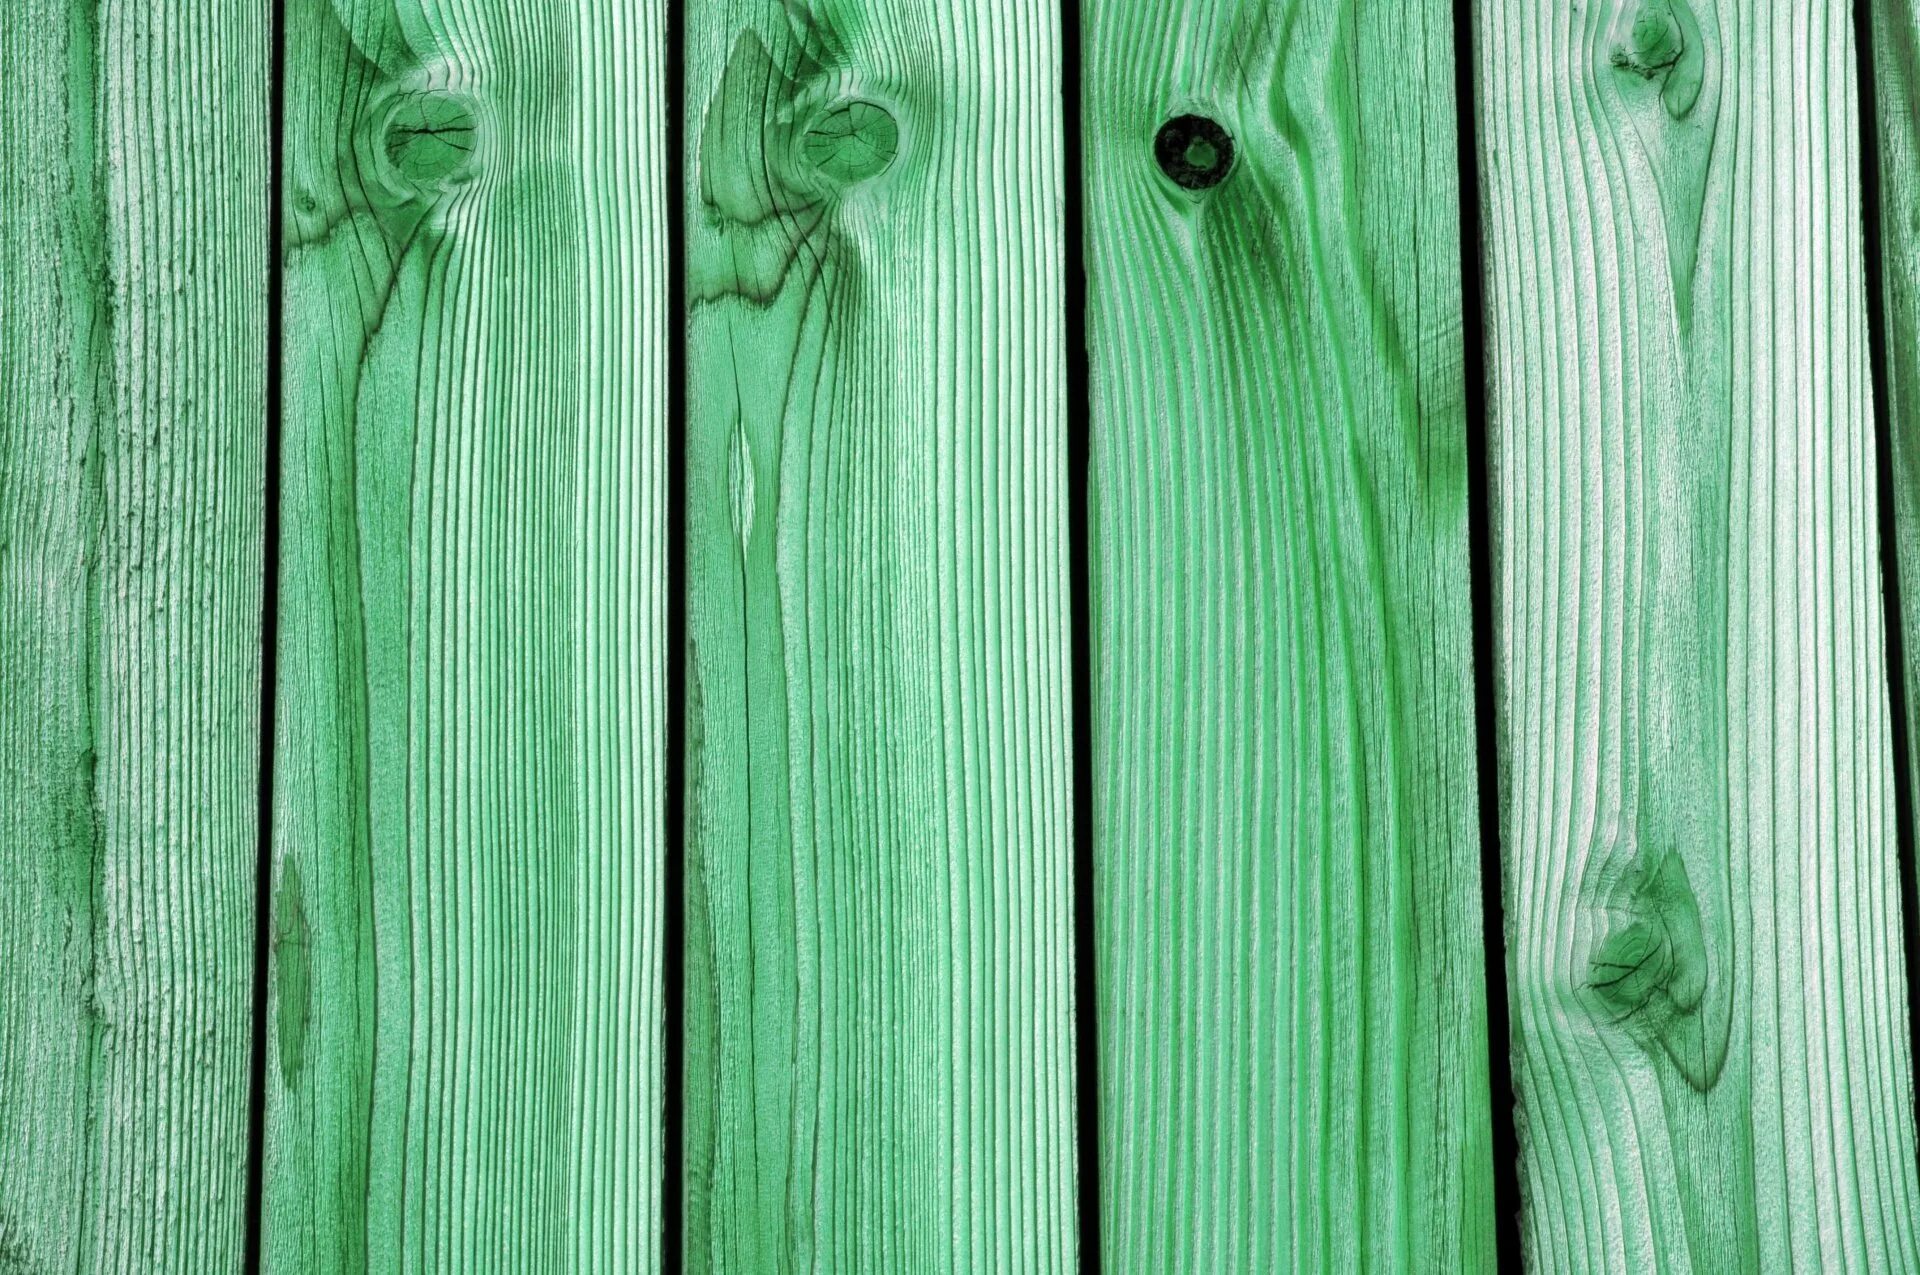 Доска цветная. Дерево доска. Текстура дерева доски. Фон деревянные доски. Зеленый деревянный забор.